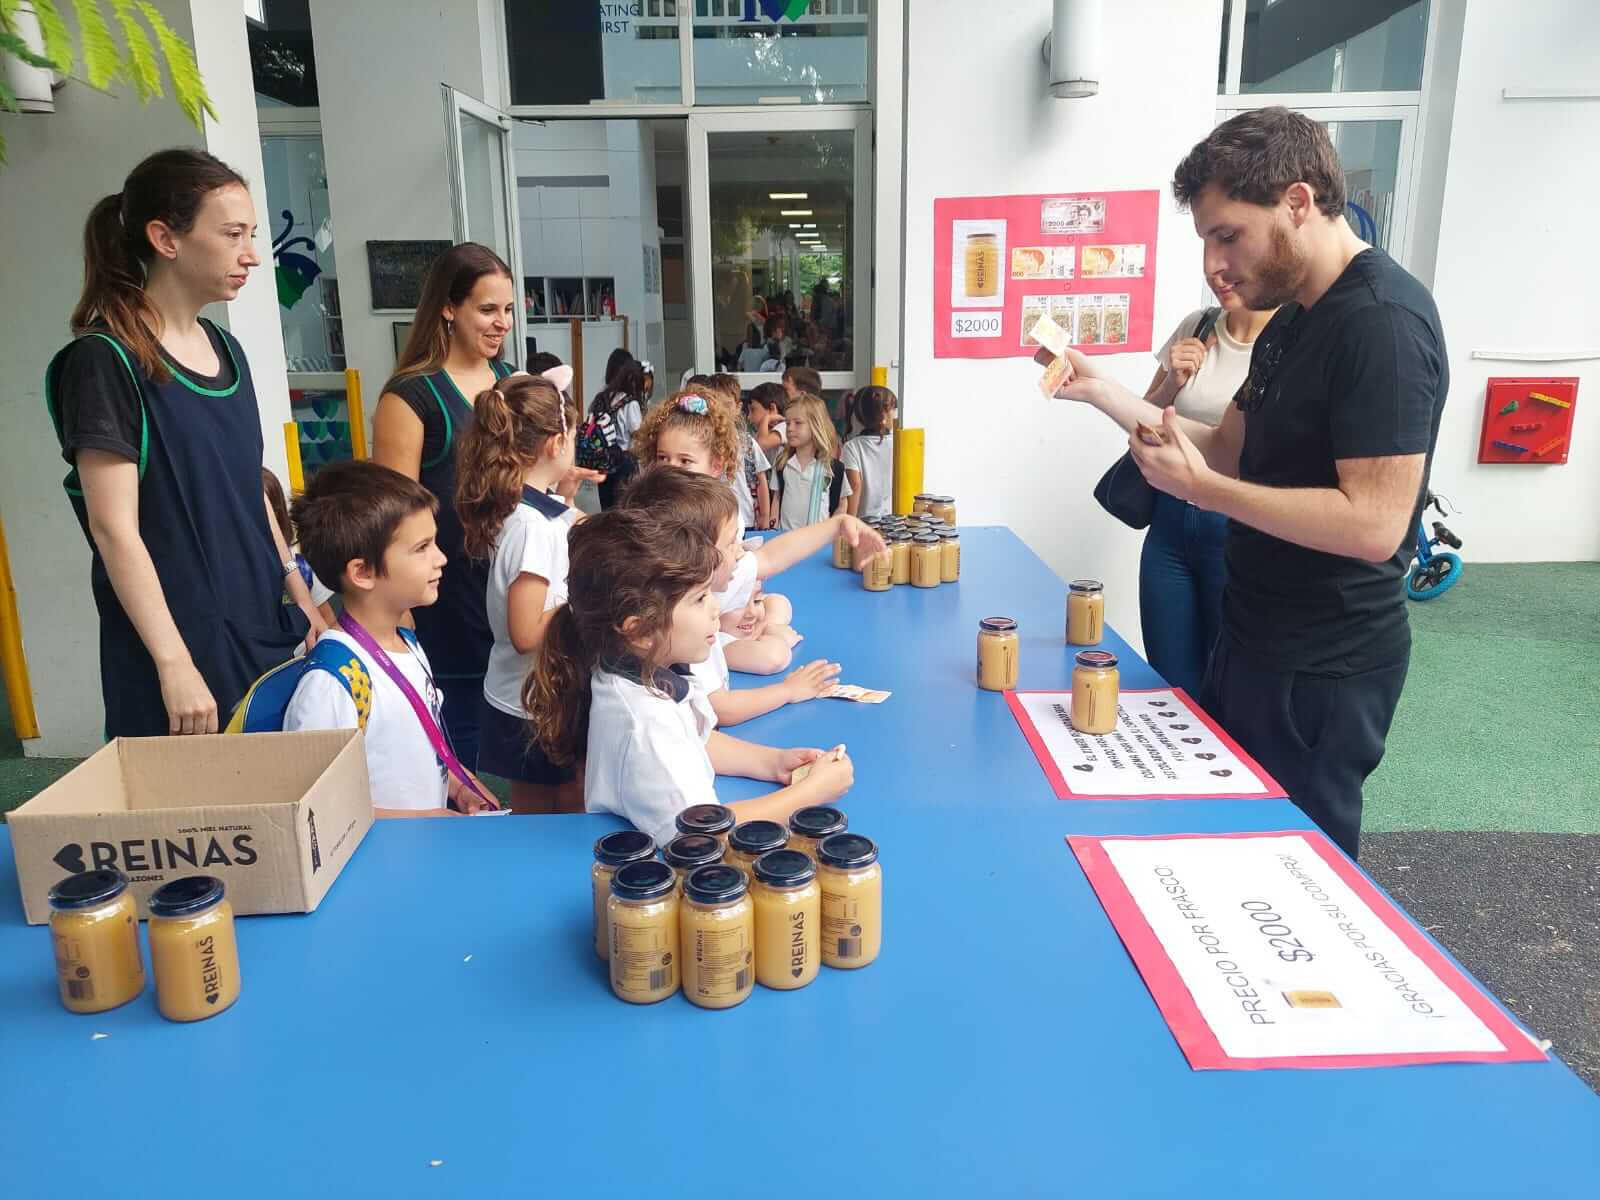 Olivos Kindergarten – Bees, Honey & Service